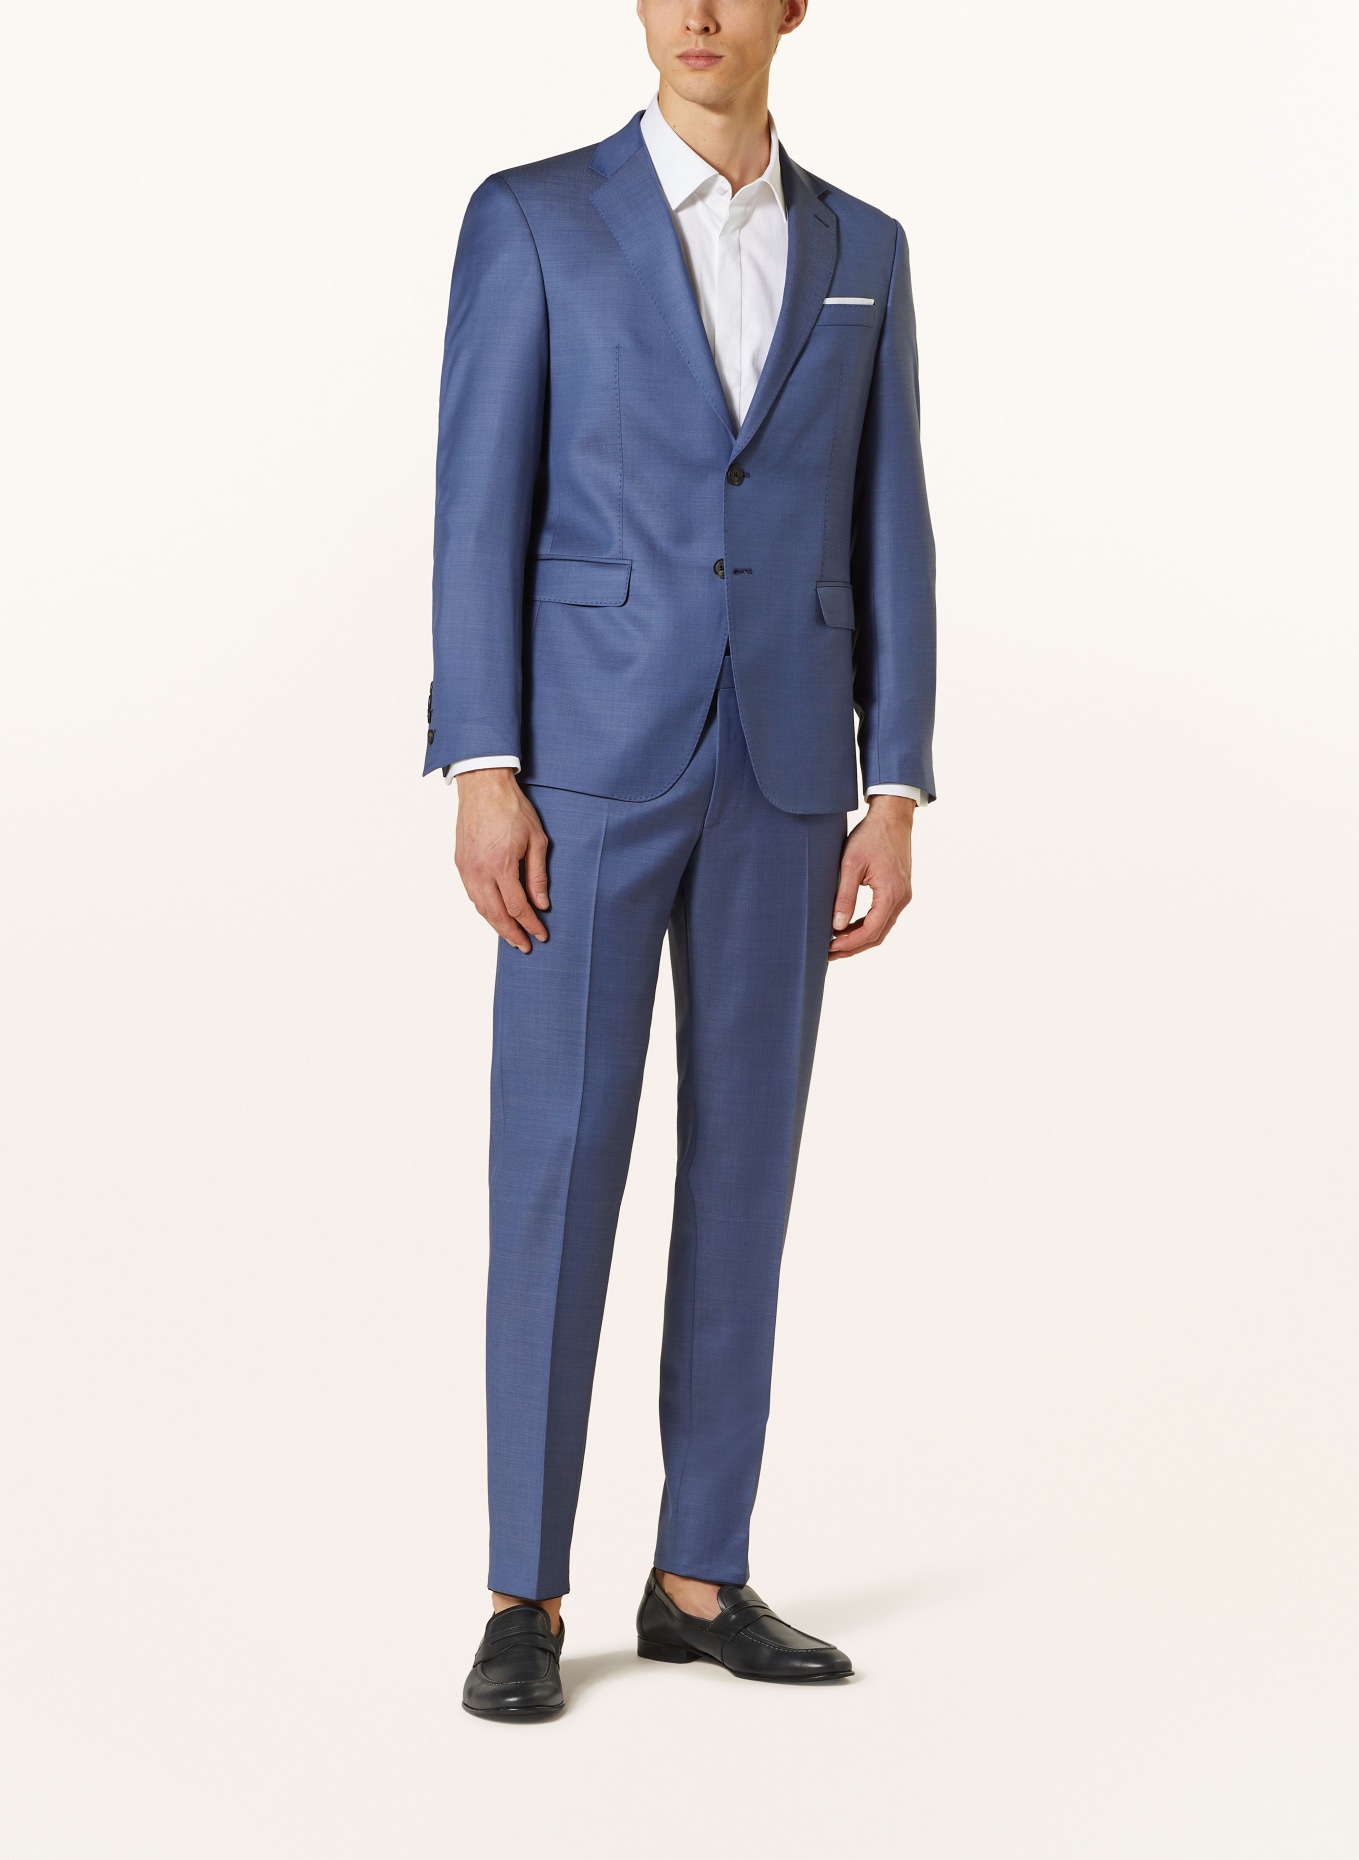 JOOP! Suit HERBY slim fit, Color: 410 Navy                       410 (Image 2)